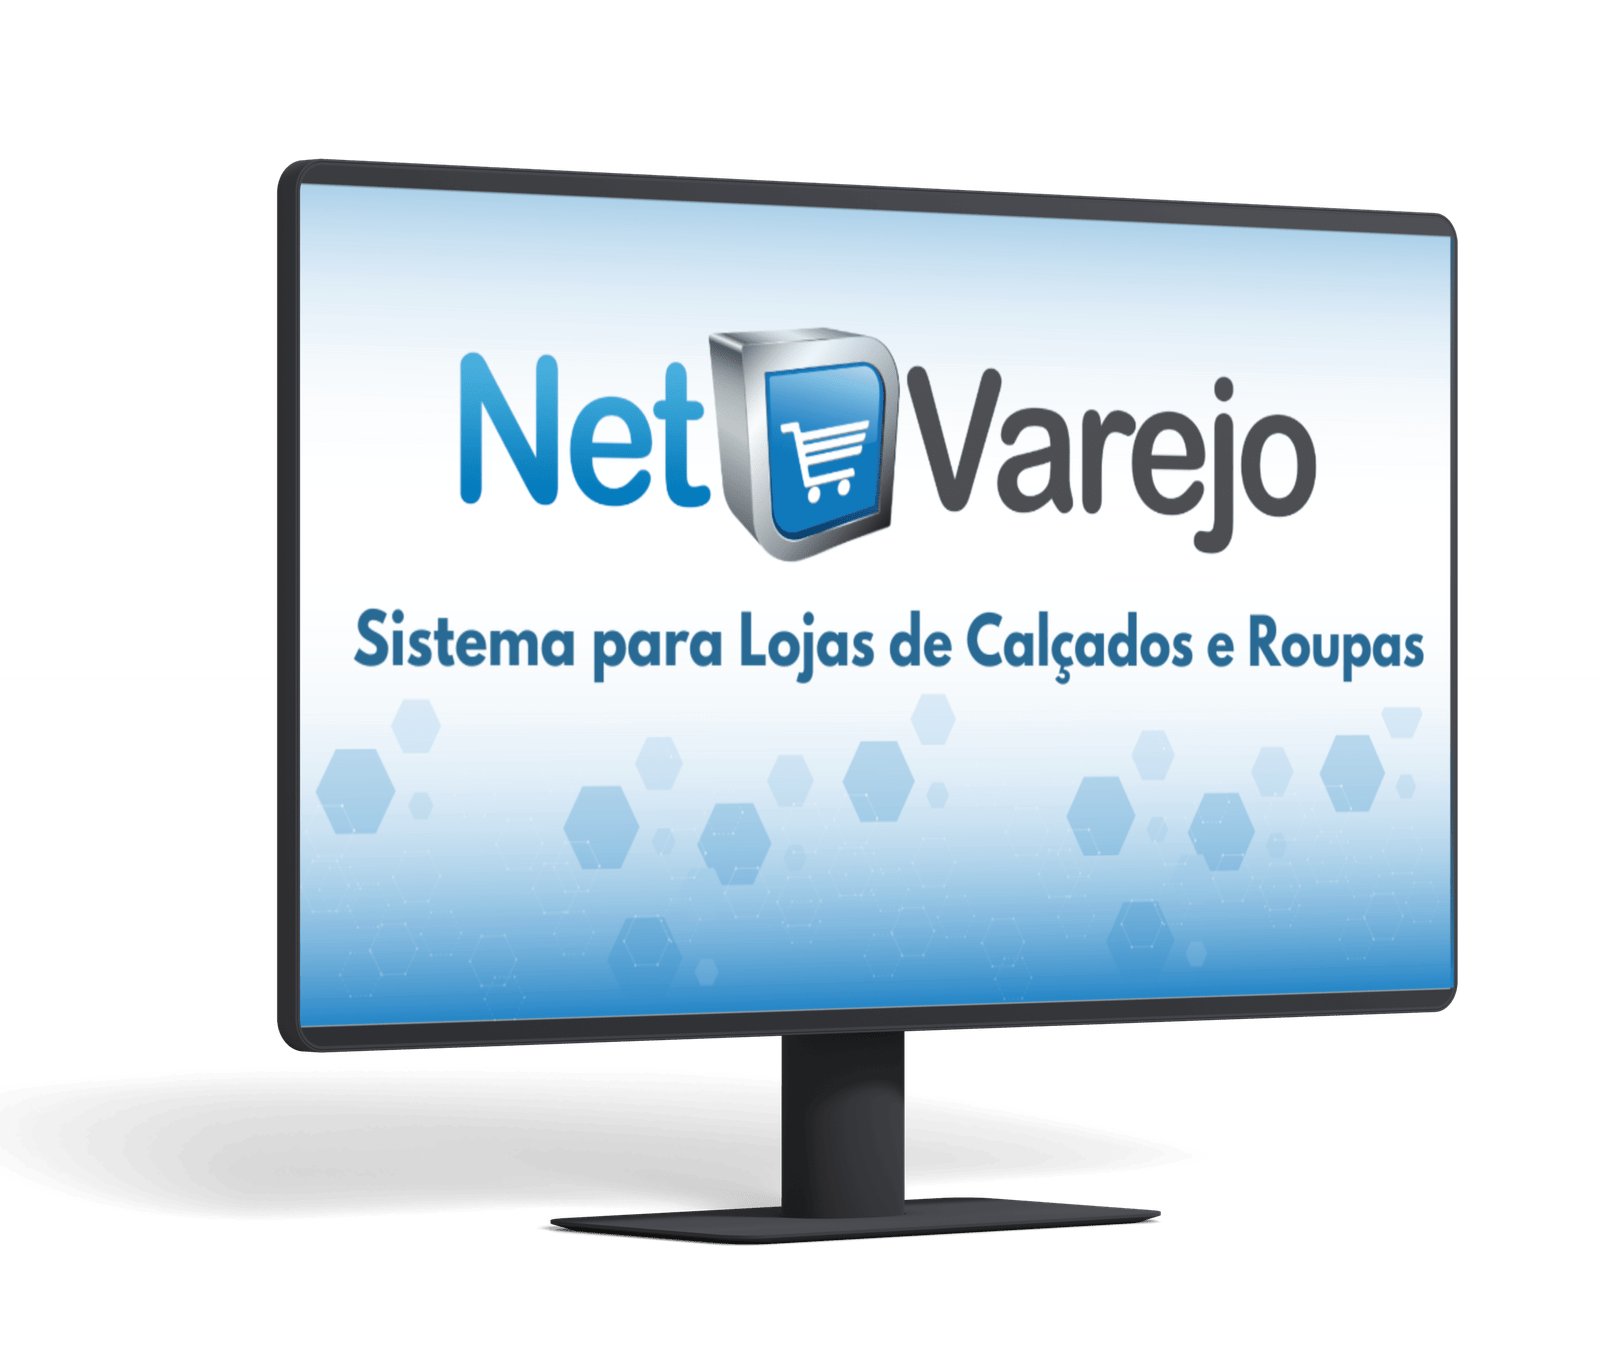 (c) Netvarejo.com.br